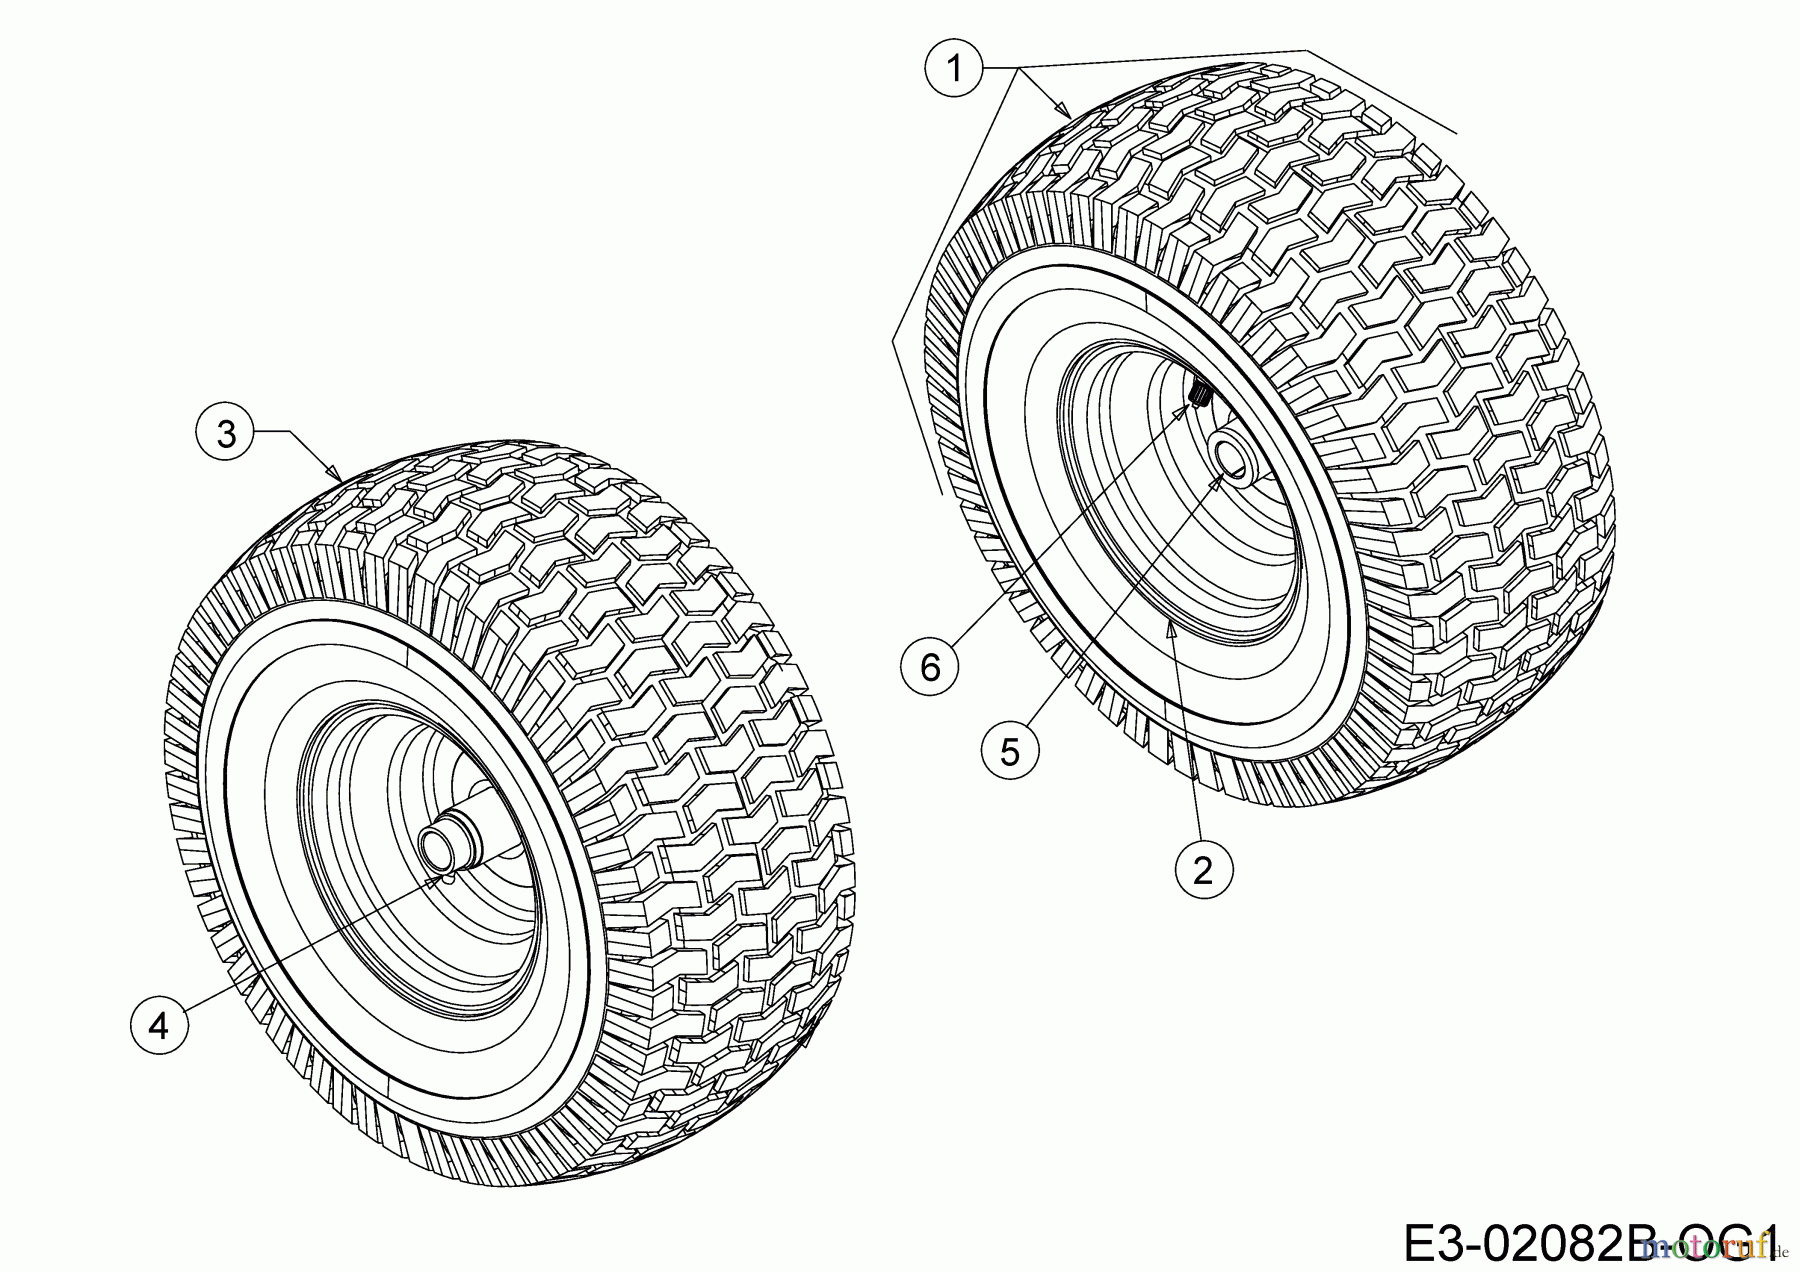  Cmi Lawn tractors 96-125 13HH765F620  (2018) Front wheels 13x5